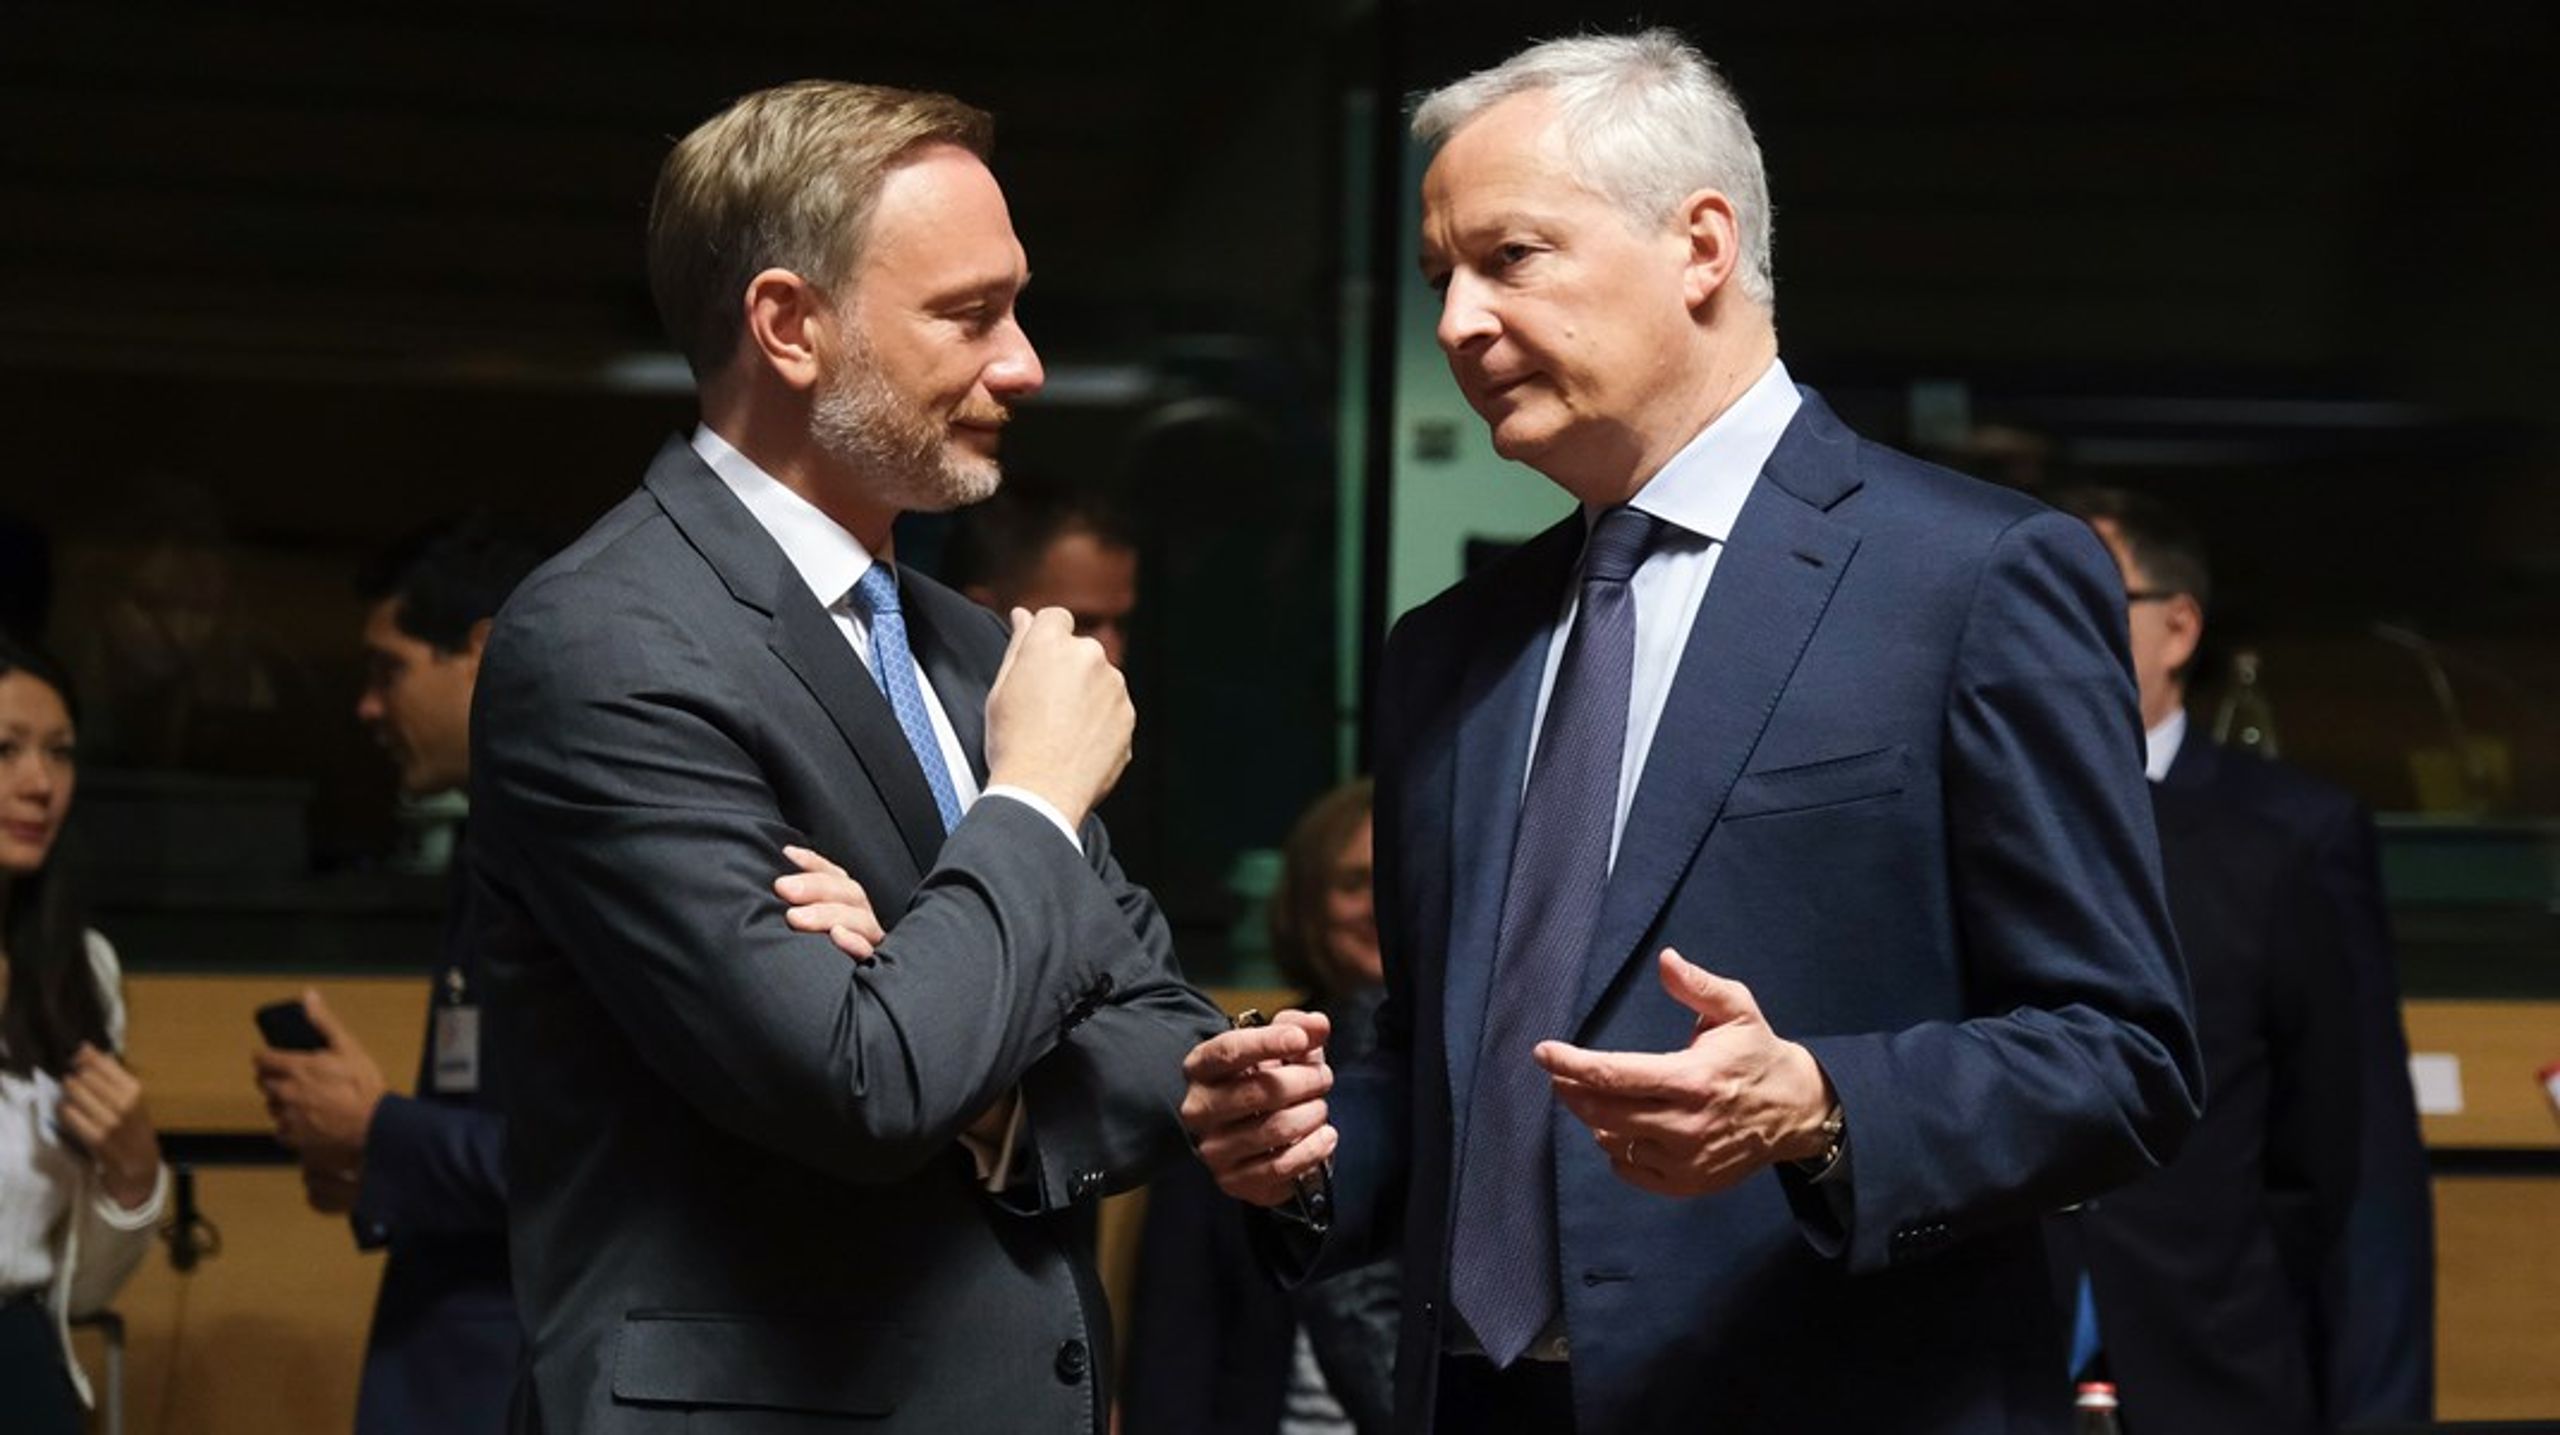 Tysklands finansminister Christian Lindner och Frankrikes Bruno Le Maire rapporteras ha spenderat åtskillig tid på att försöka nå enighet om EU:s nya finanspolitiska regelverk. Mycket hänger på att deras två länder lyckas komma överens.